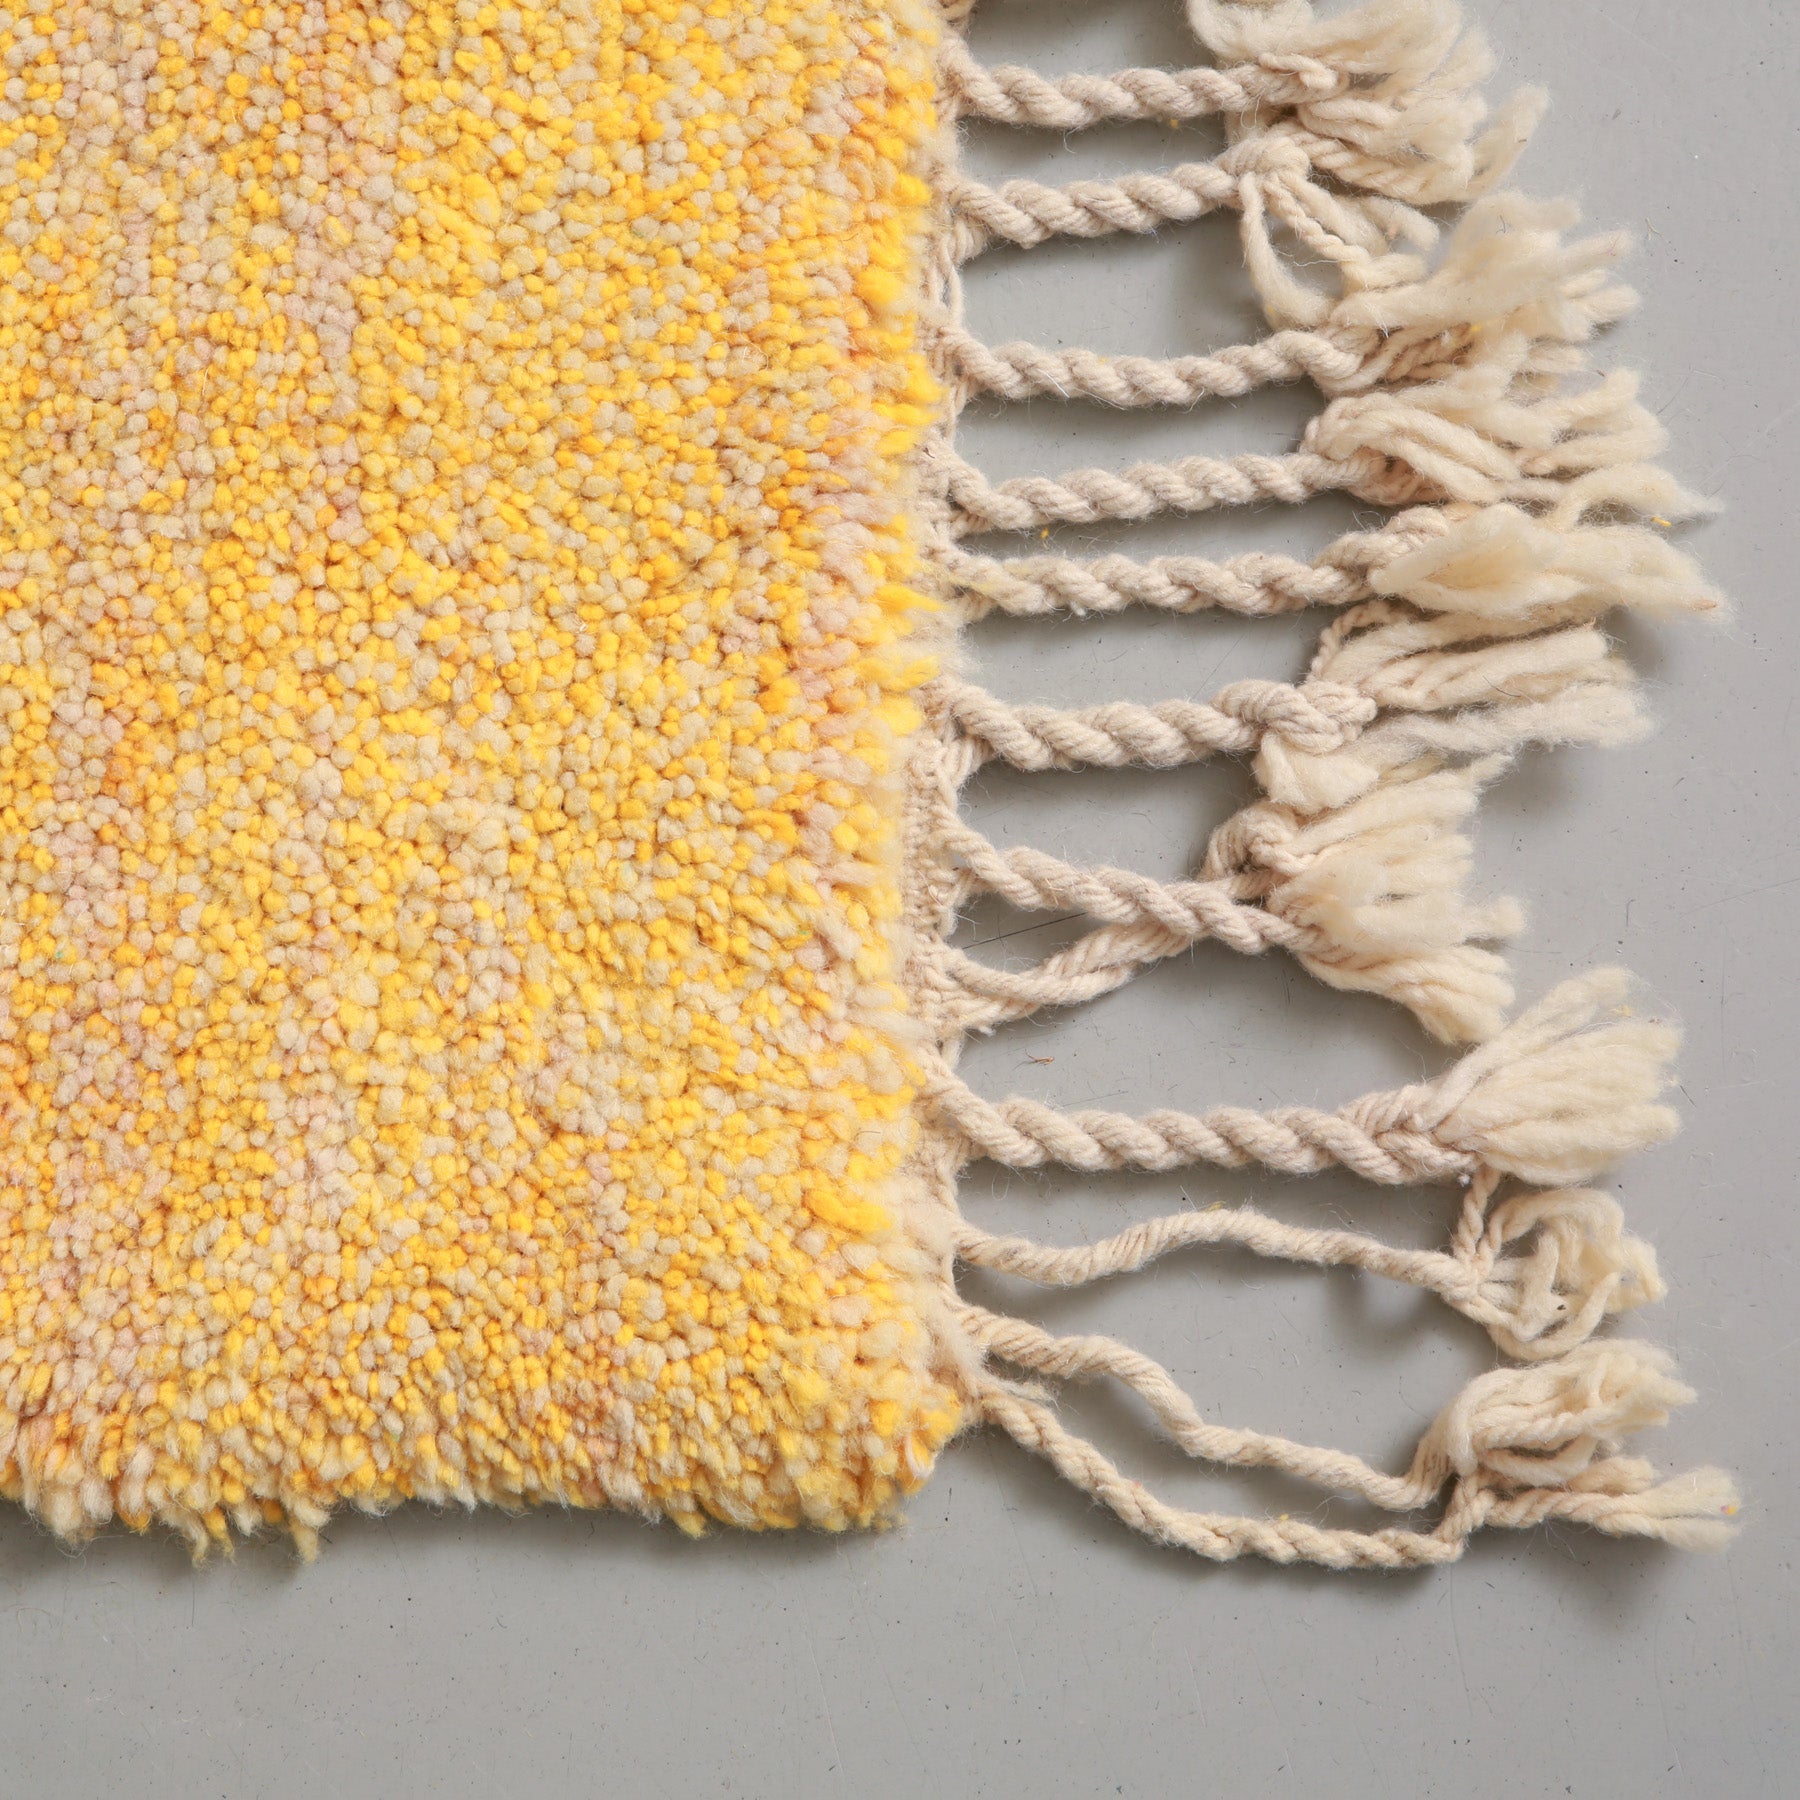 dettaglio dell'angolo e della frangia lunga  e della lana dalle molteplici sfumature di giallo di un tappeto beni ourain realizzato a mano